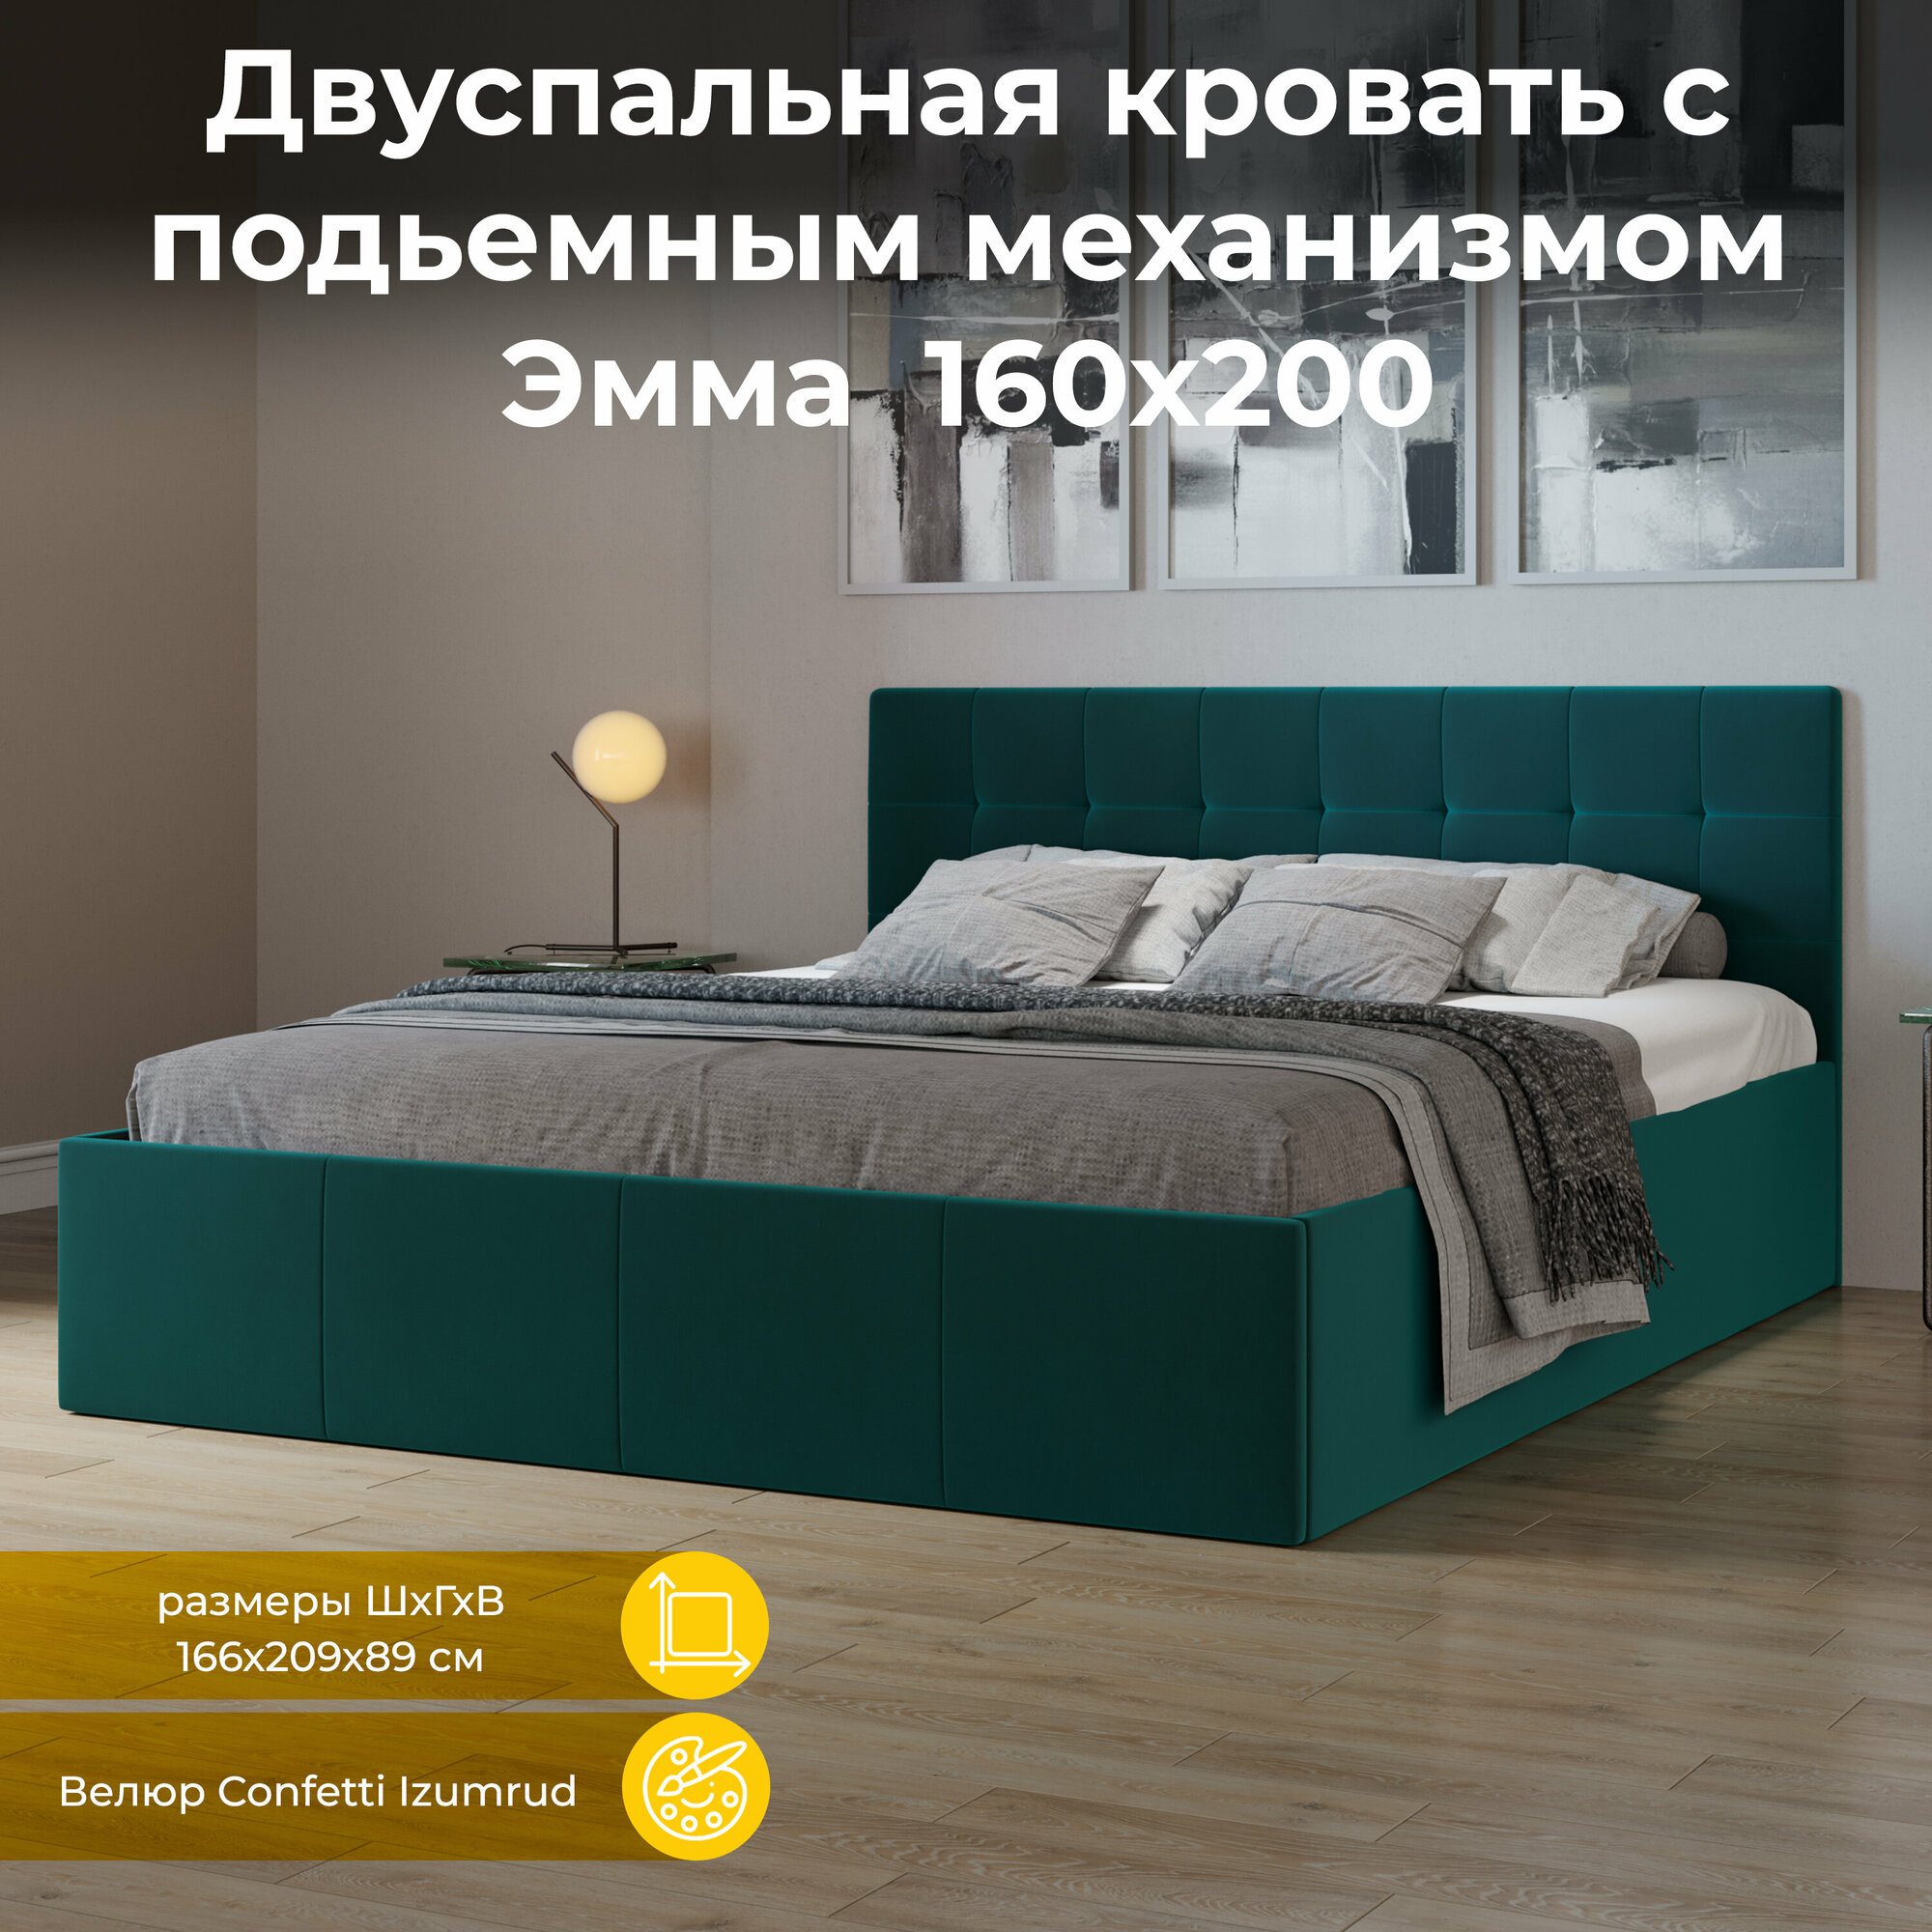 Кровать с подъемным механизмом, с мягкой обивкой и заглушиной зеленая 160х200 Эмма (Велюр Confetti Izumrud)